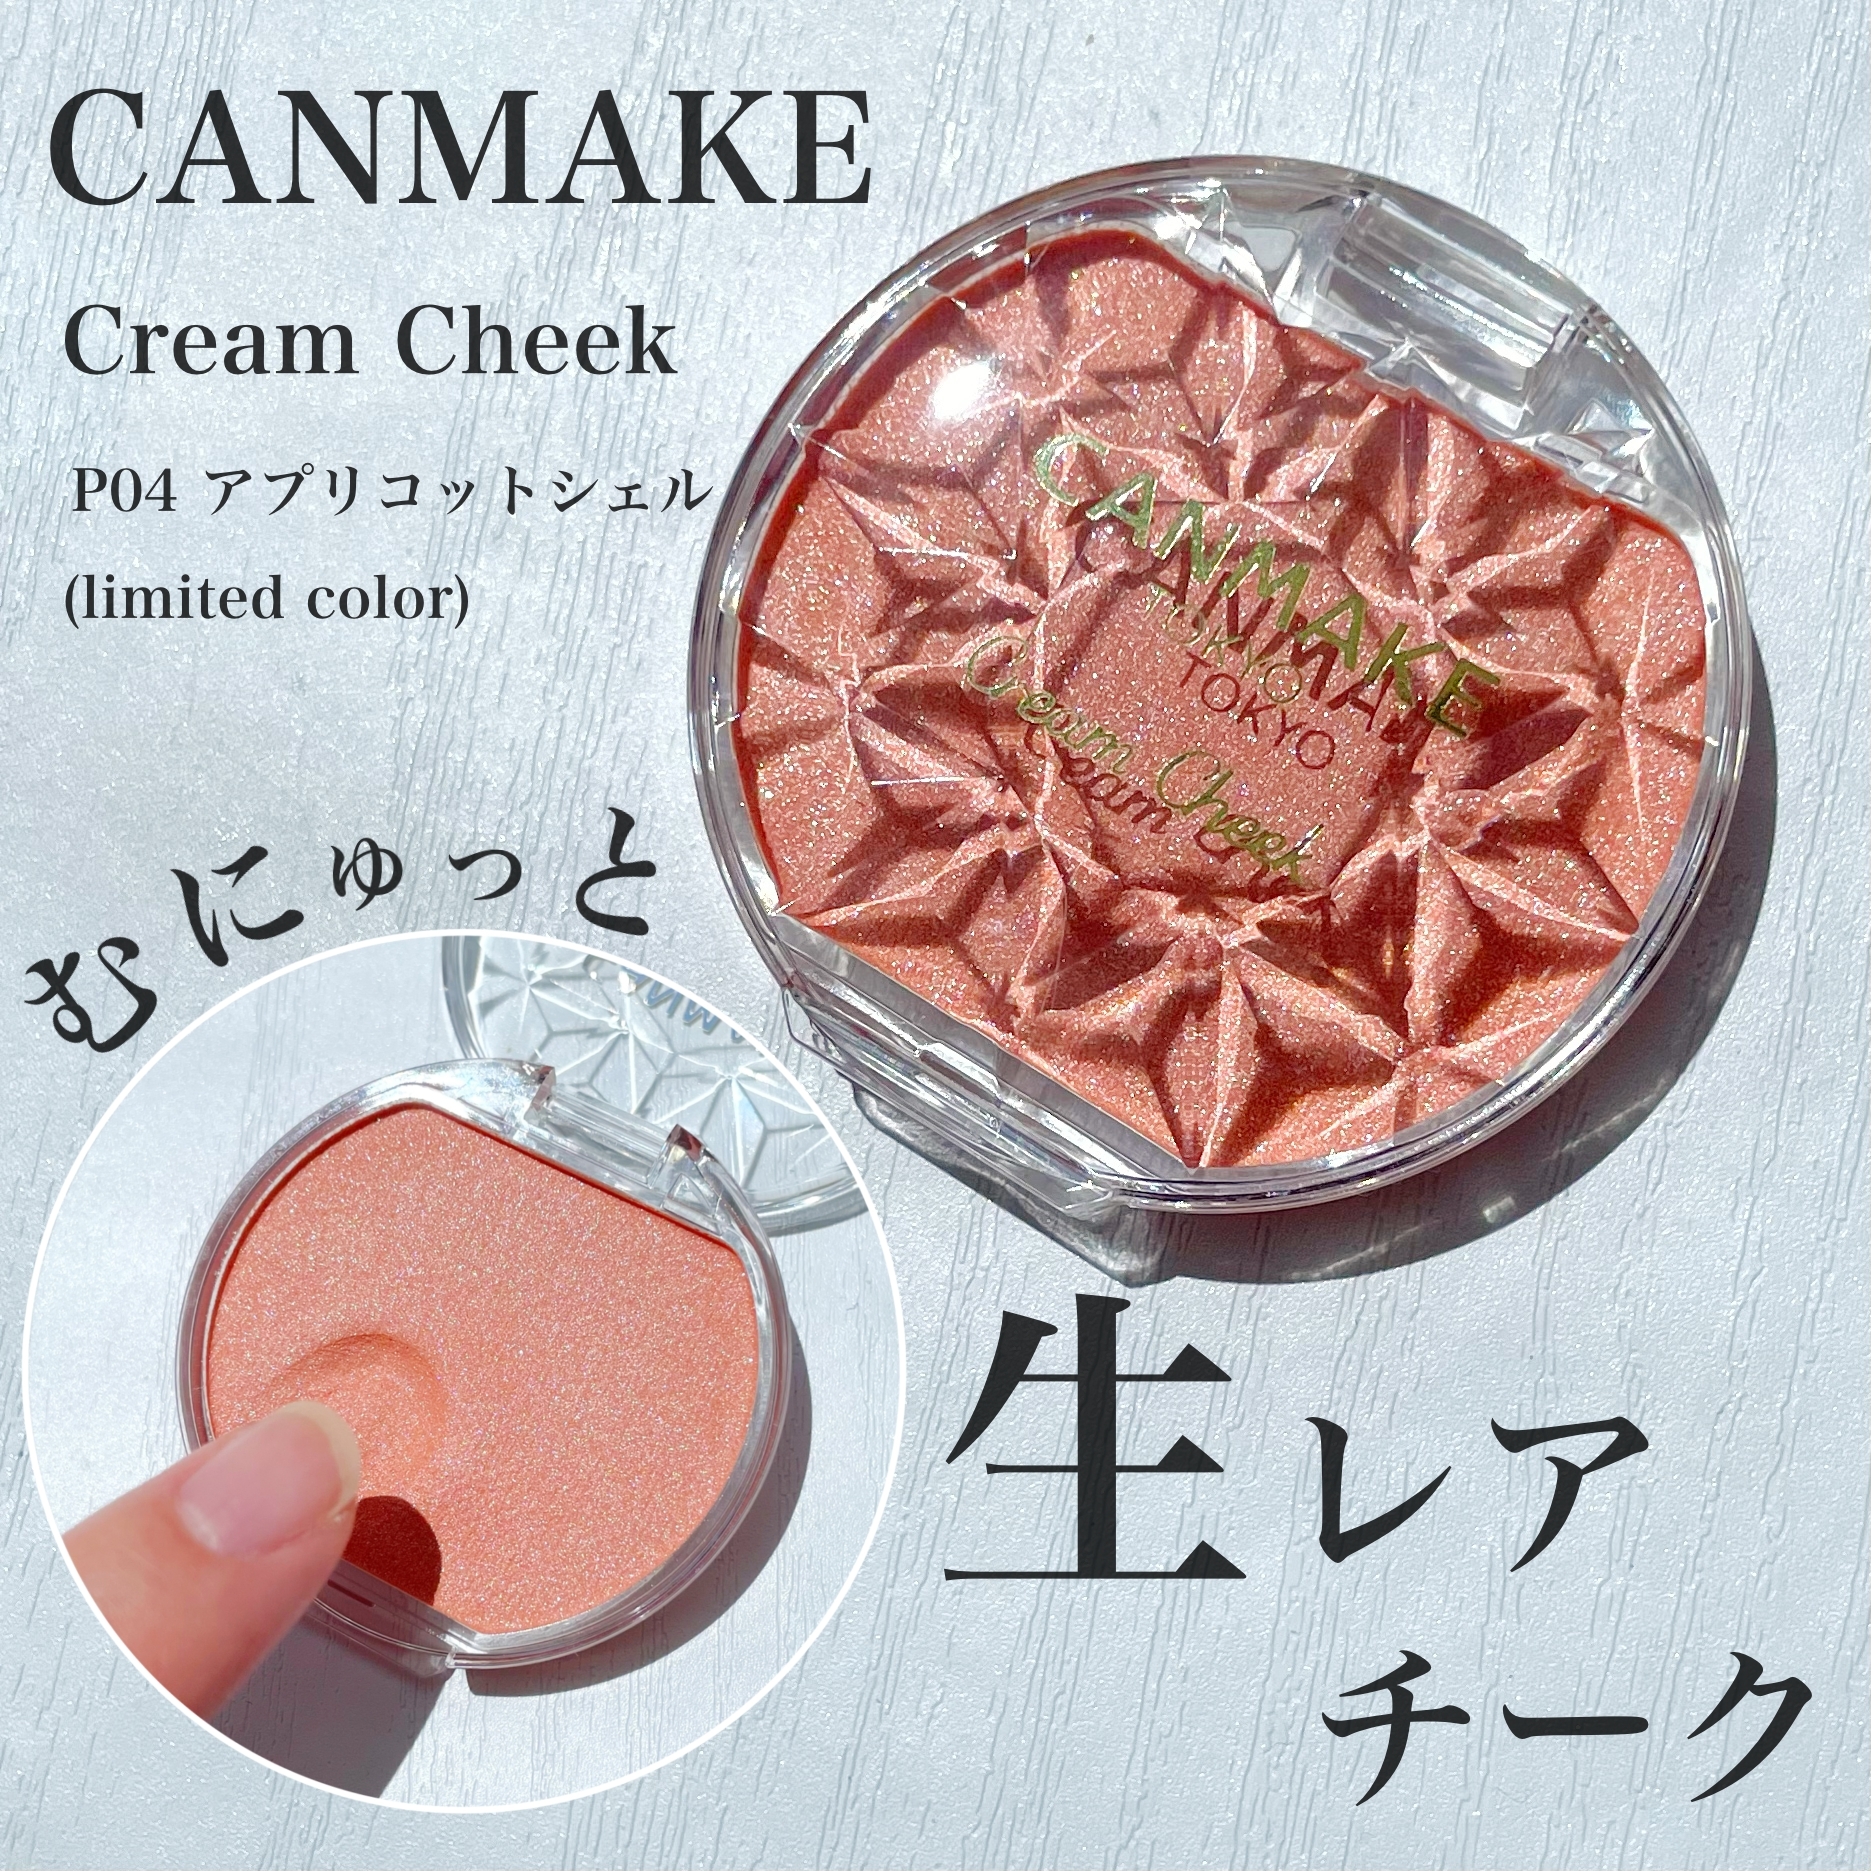 CANMAKE(キャンメイク) クリームチークの良い点・メリットに関するKeiさんの口コミ画像1